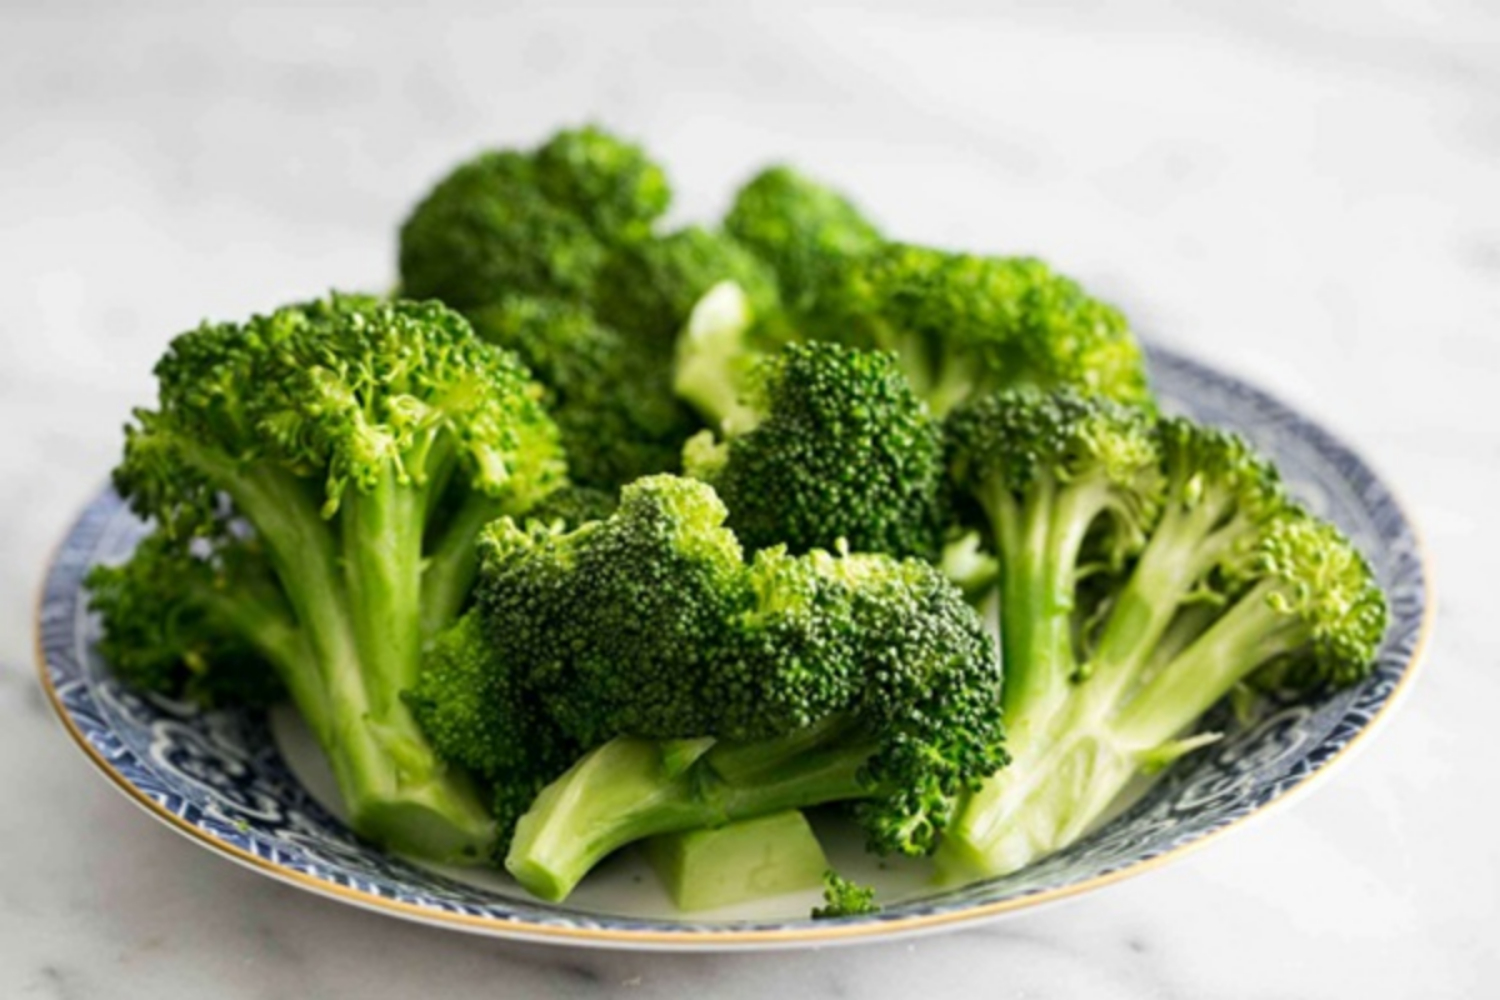 Các loại rau màu xanh như bông cải xanh chứa chất chống oxy hóa, lutein và zeaxanthin, giúp giảm nguy cơ bị thoái hóa điểm vàng.